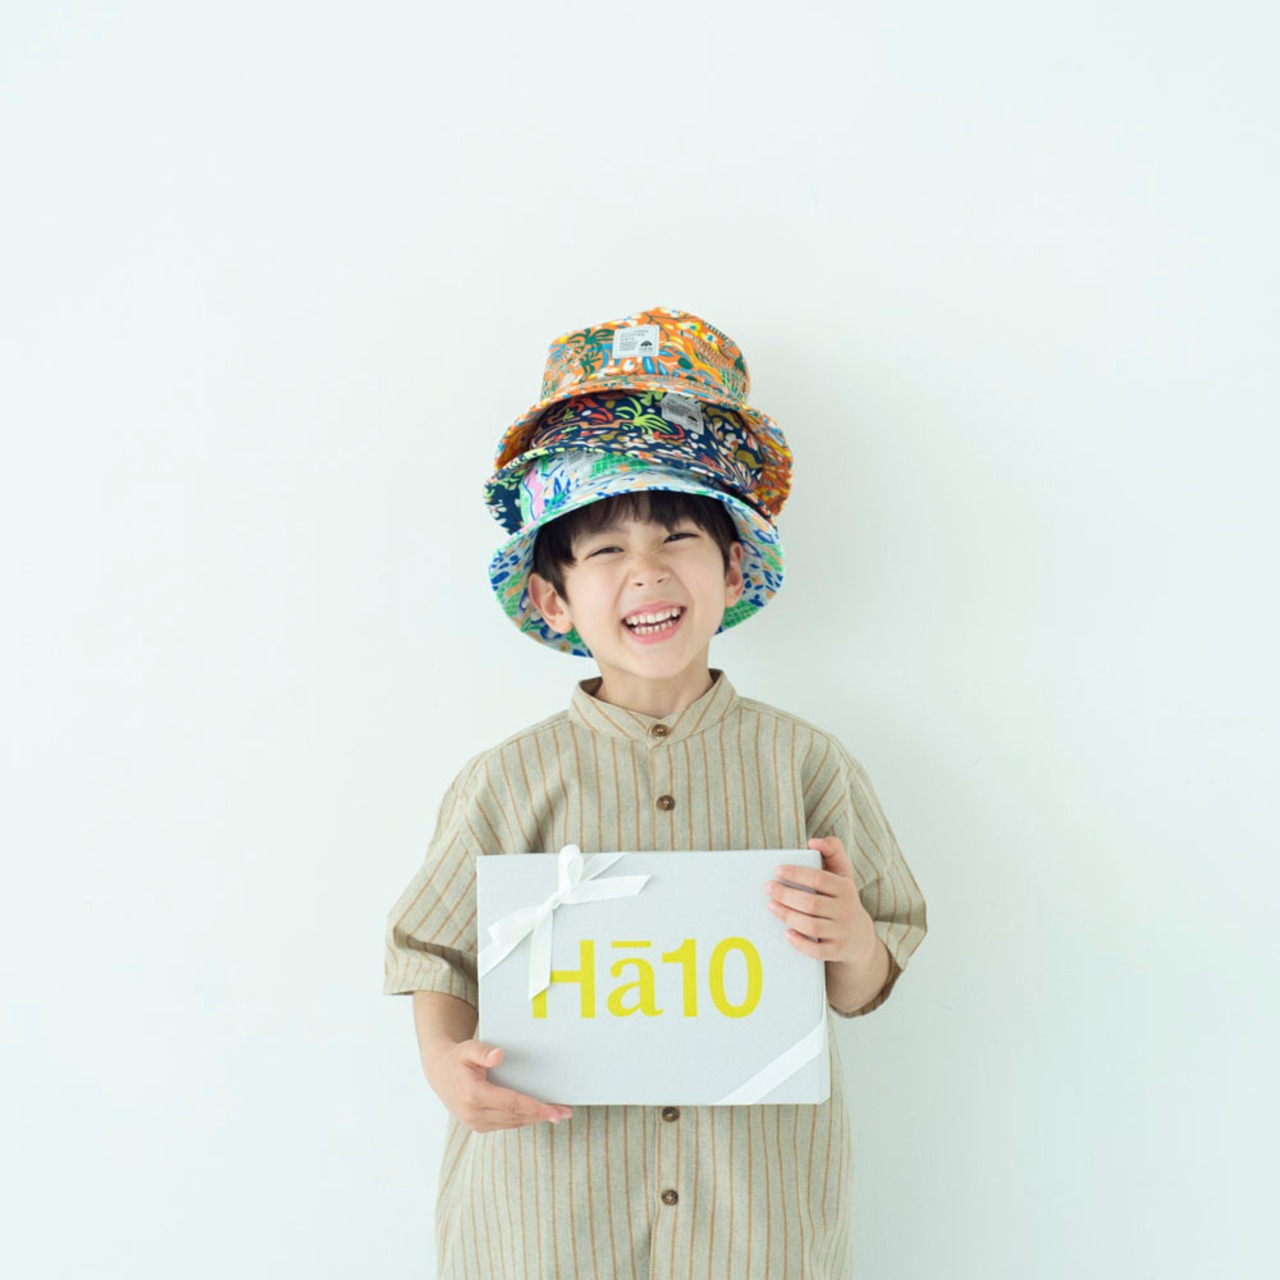 マフラー【マルチオレンジ】ブランド 子供 帽子 男の子 女の子 男女兼用 日本製 出産祝い キャップ ハット キッズ ギフト